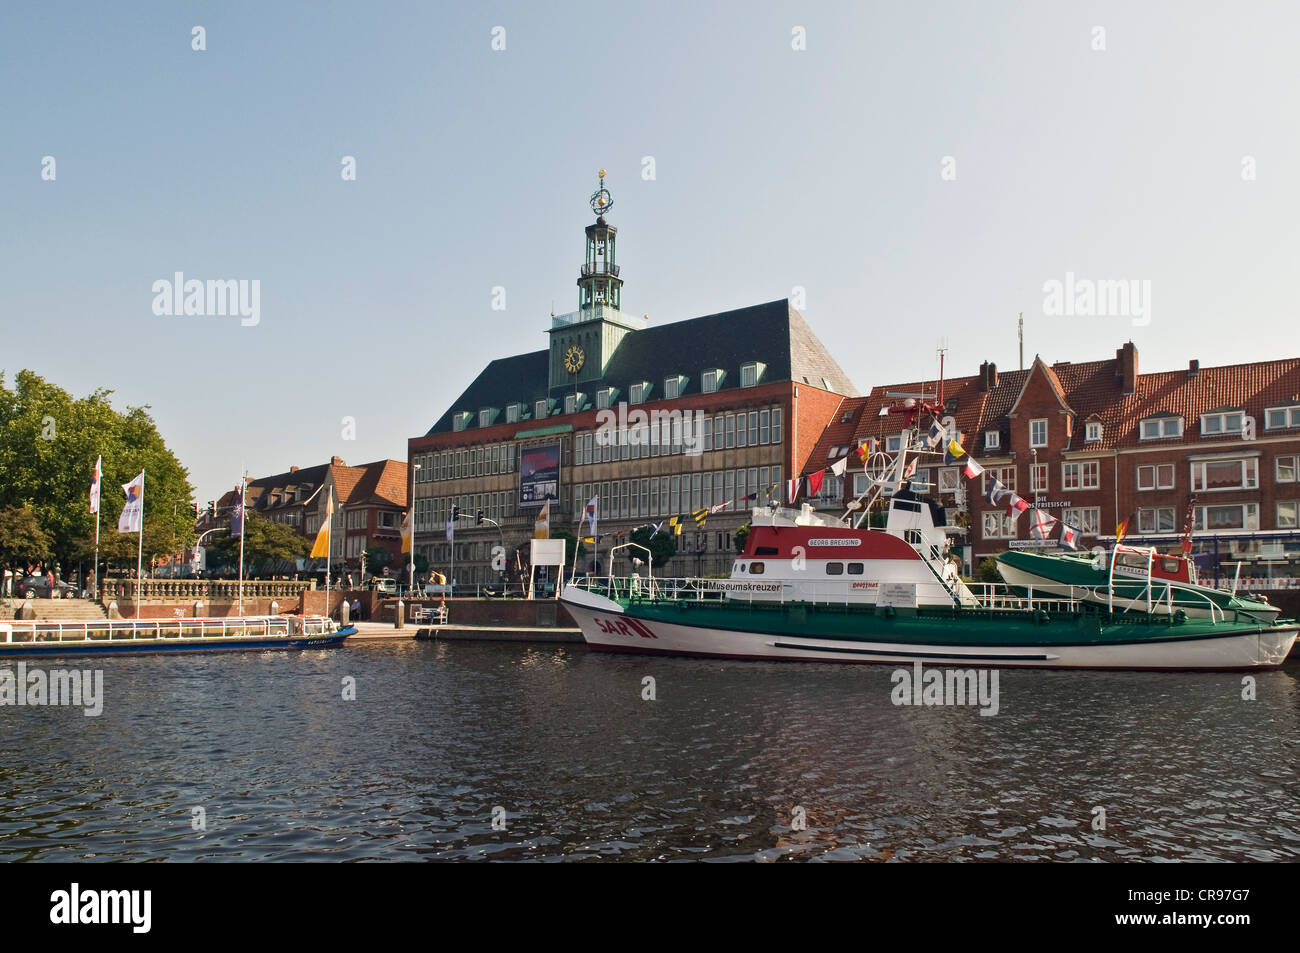 Antiguo ayuntamiento con el glockenspiel y el bote salvavidas Breusing Georg Ratsdelft frontal, puerto, Emden, Emden, Frisia Oriental Foto de stock